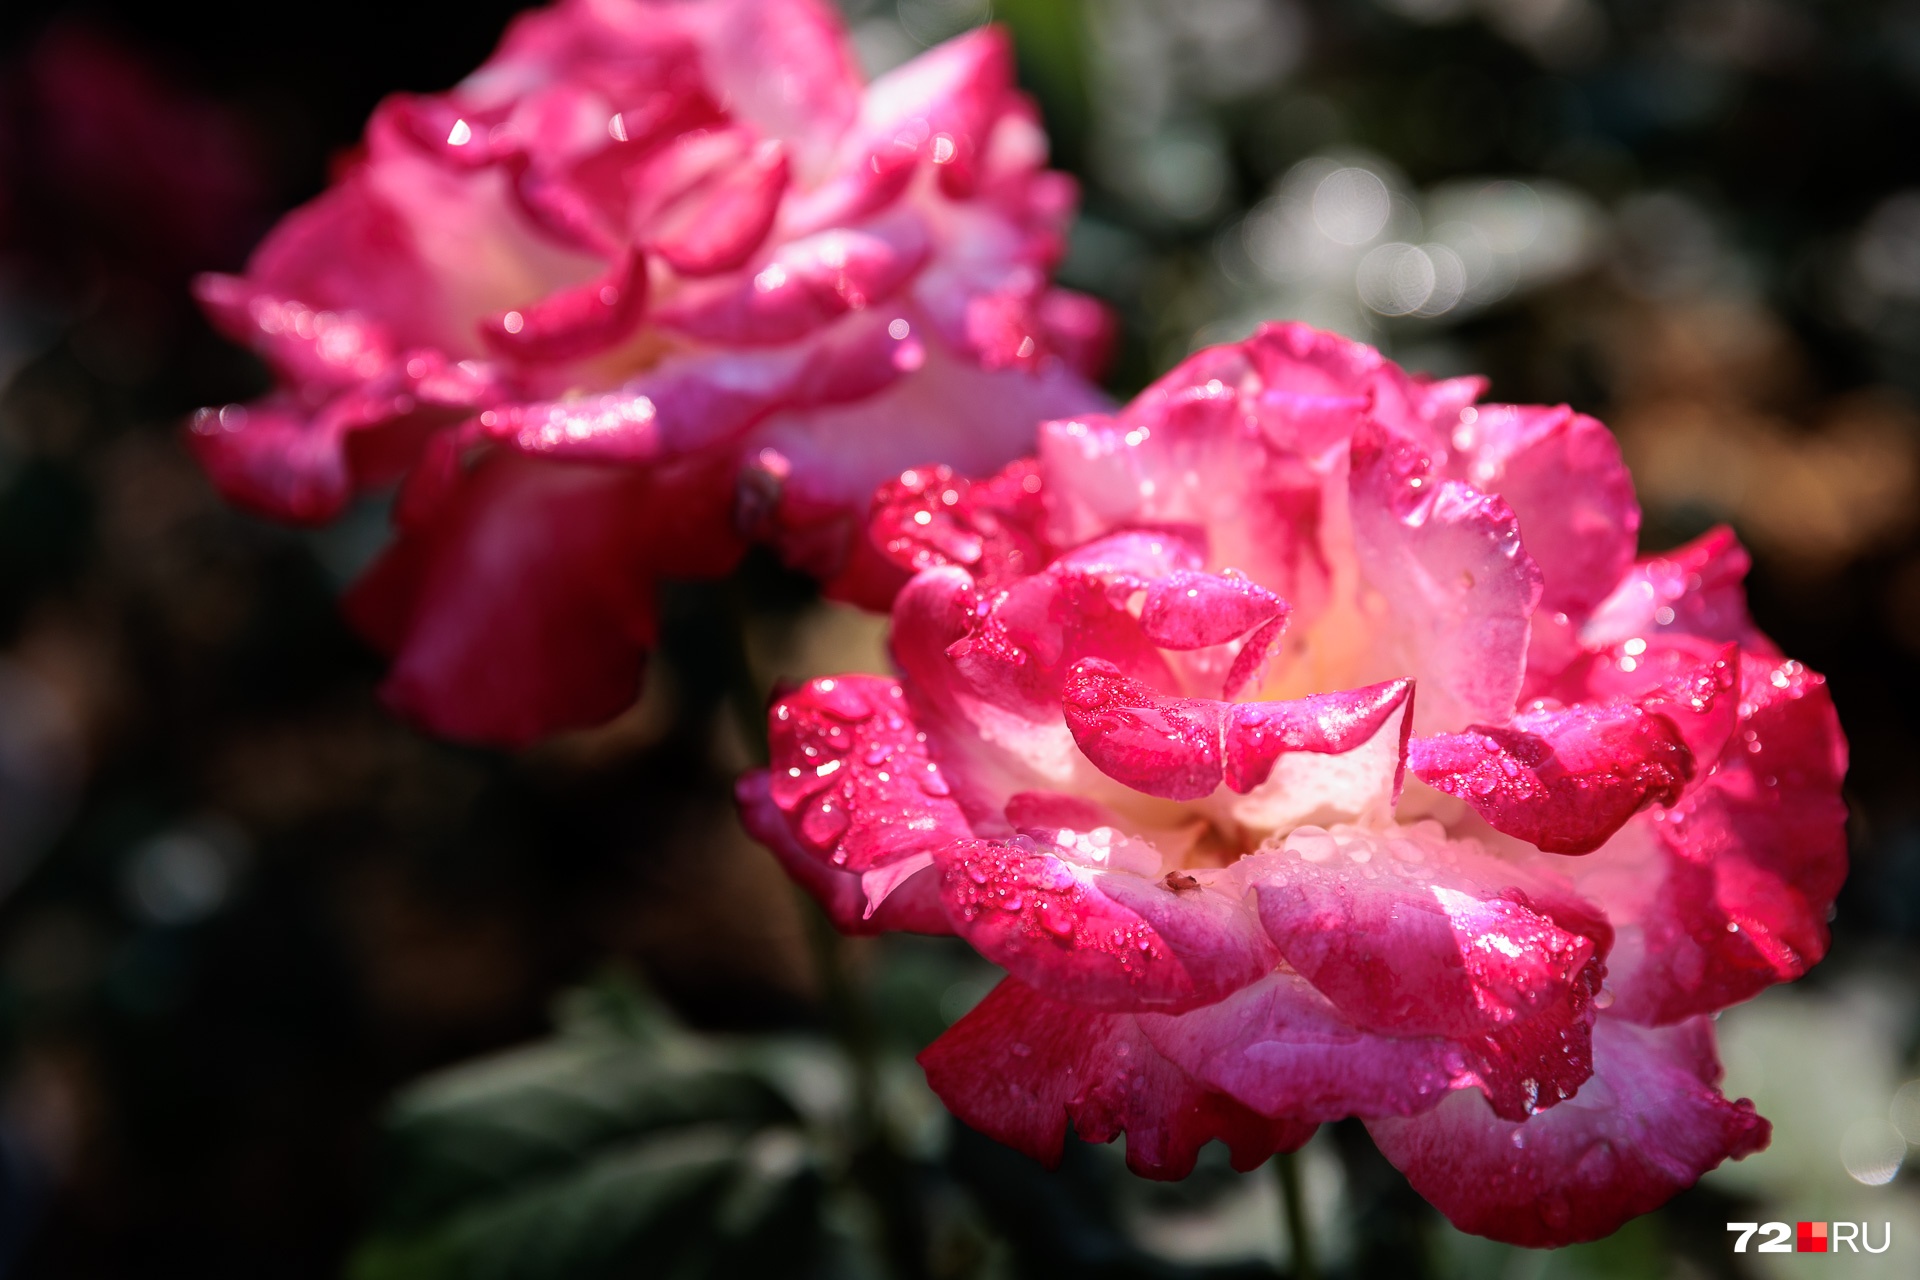 Завершим виртуальную прогулку по саду очень фотогеничными розами. И кустов, и сортов со временем станет еще больше: Наталья в этом уверена